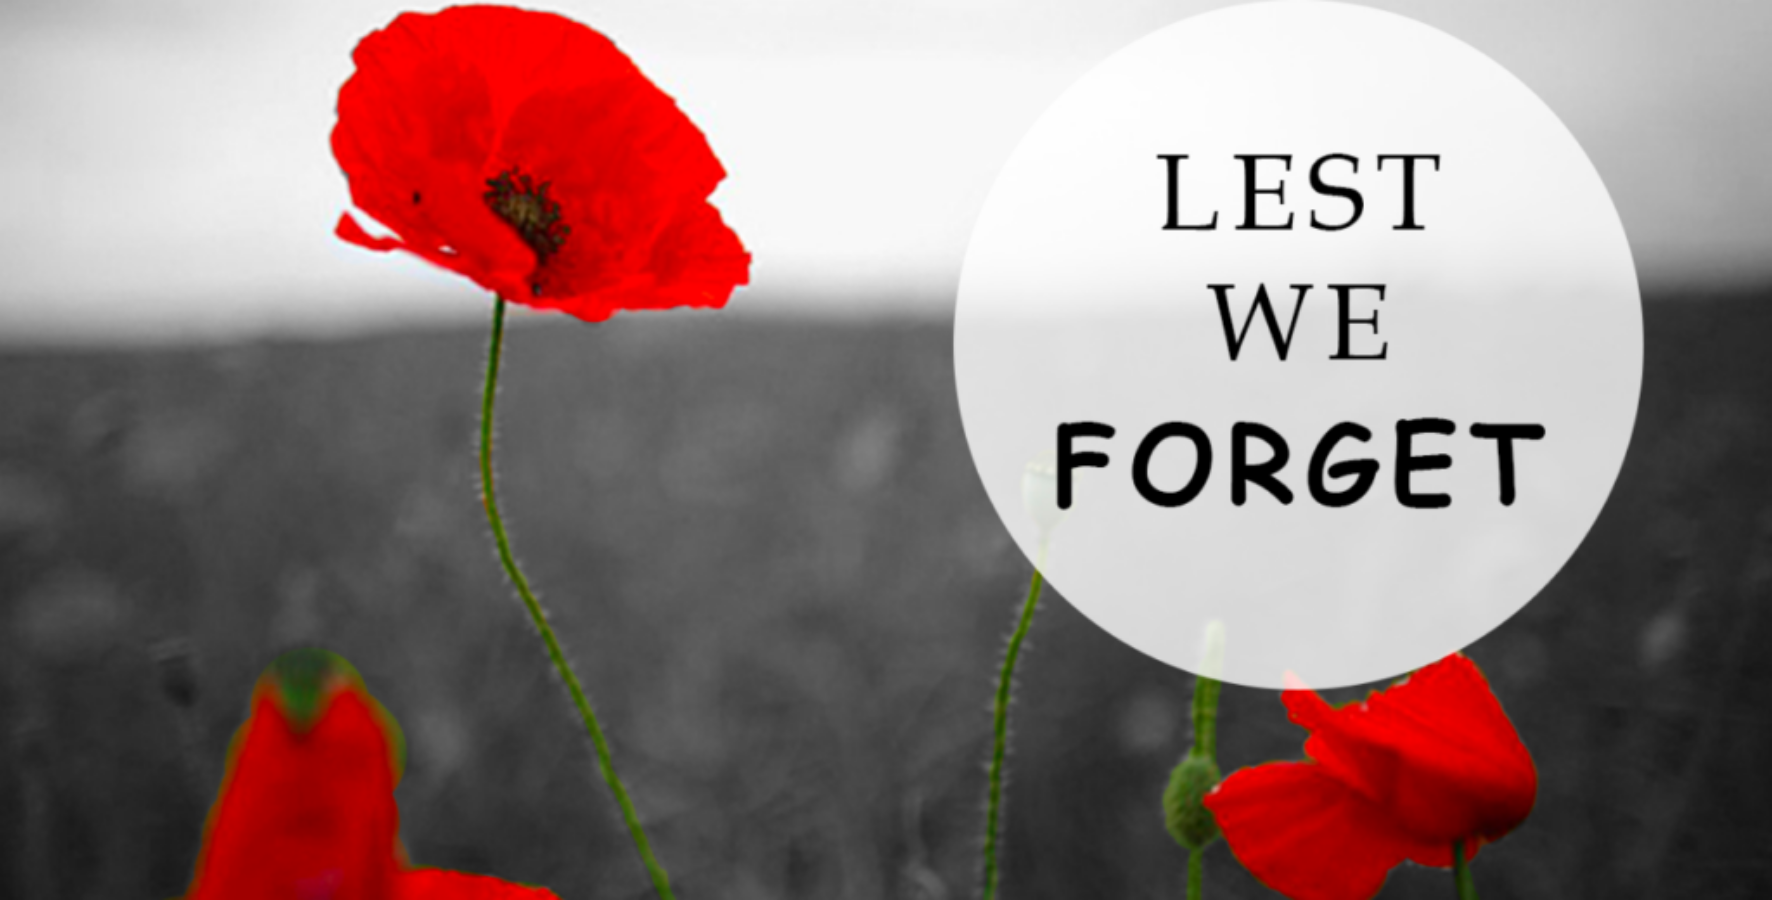 We remember.